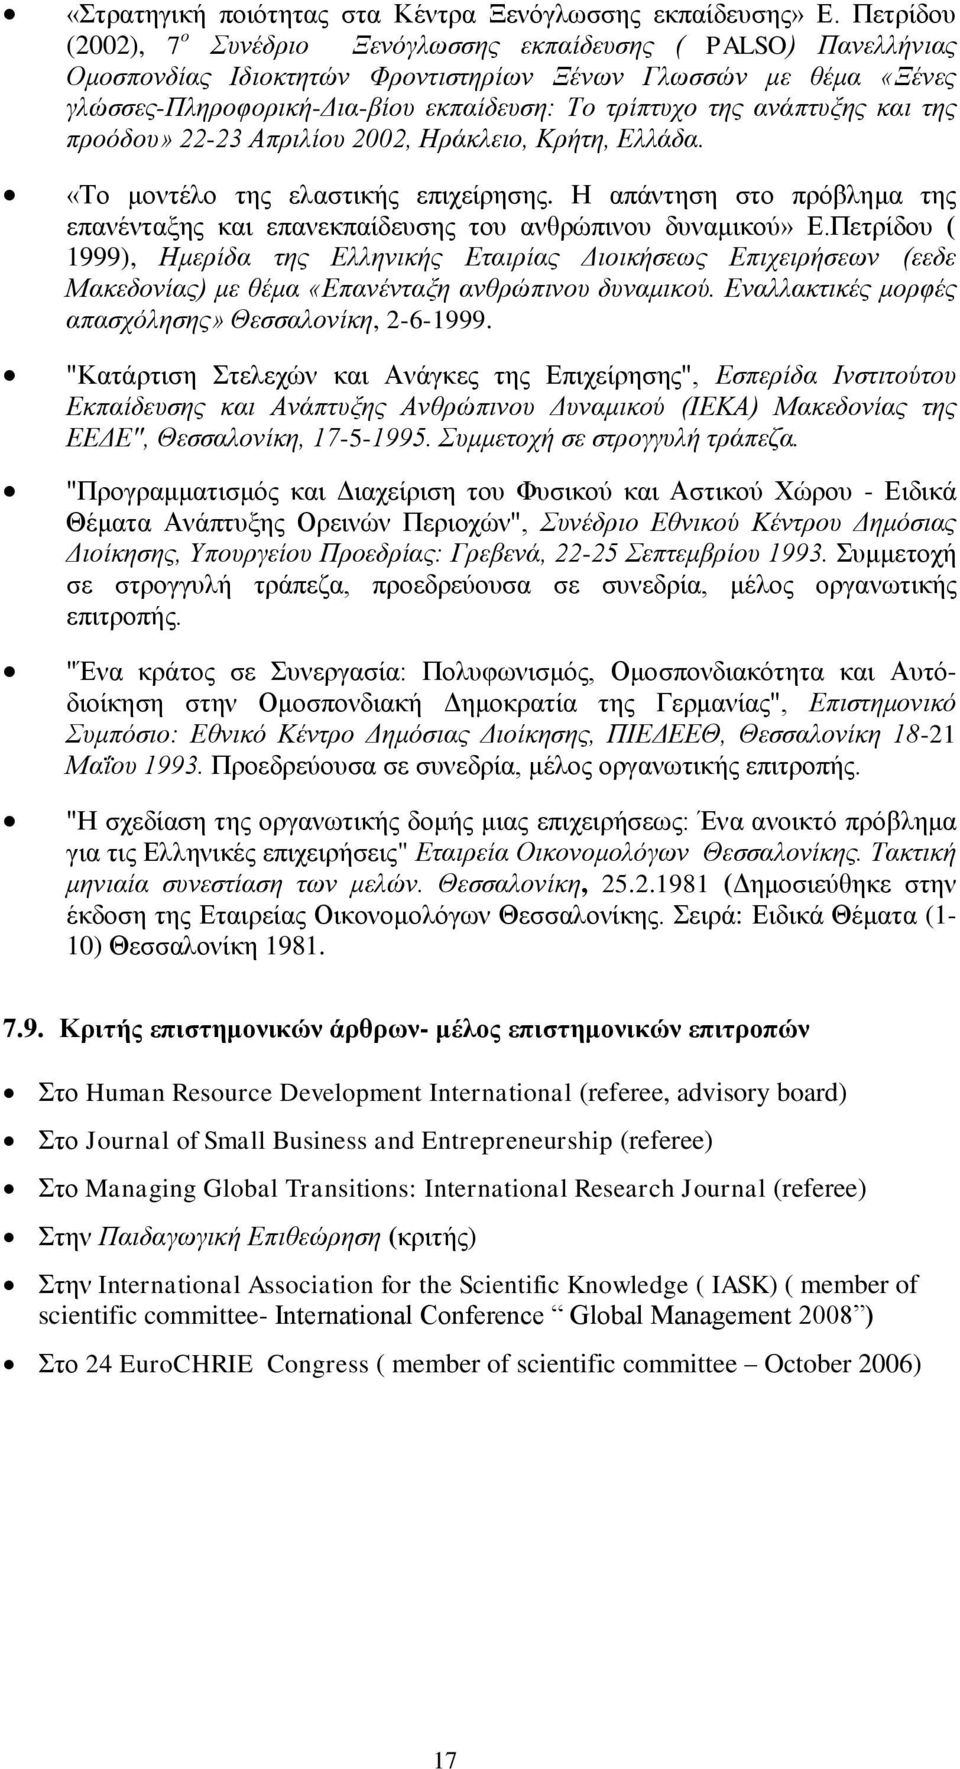 ανάπτυξης και της προόδου» 22-23 Απριλίου 2002, Ηράκλειο, Κρήτη, Ελλάδα. «Το μοντέλο της ελαστικής επιχείρησης. Η απάντηση στο πρόβλημα της επανένταξης και επανεκπαίδευσης του ανθρώπινου δυναμικού» Ε.